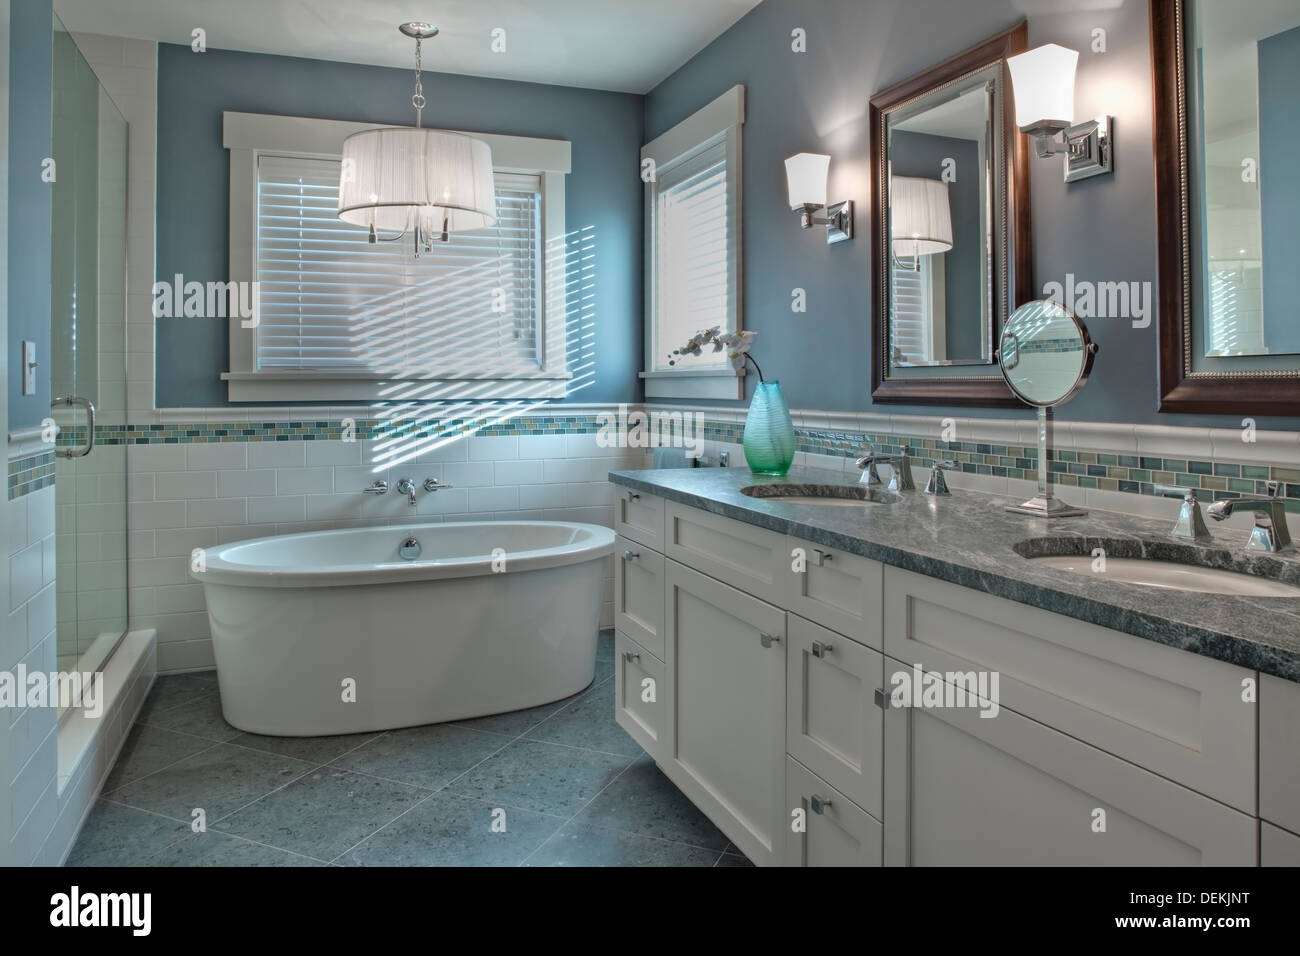 Badewanne, Toilette und Waschbecken im Badezimmer Stockfoto